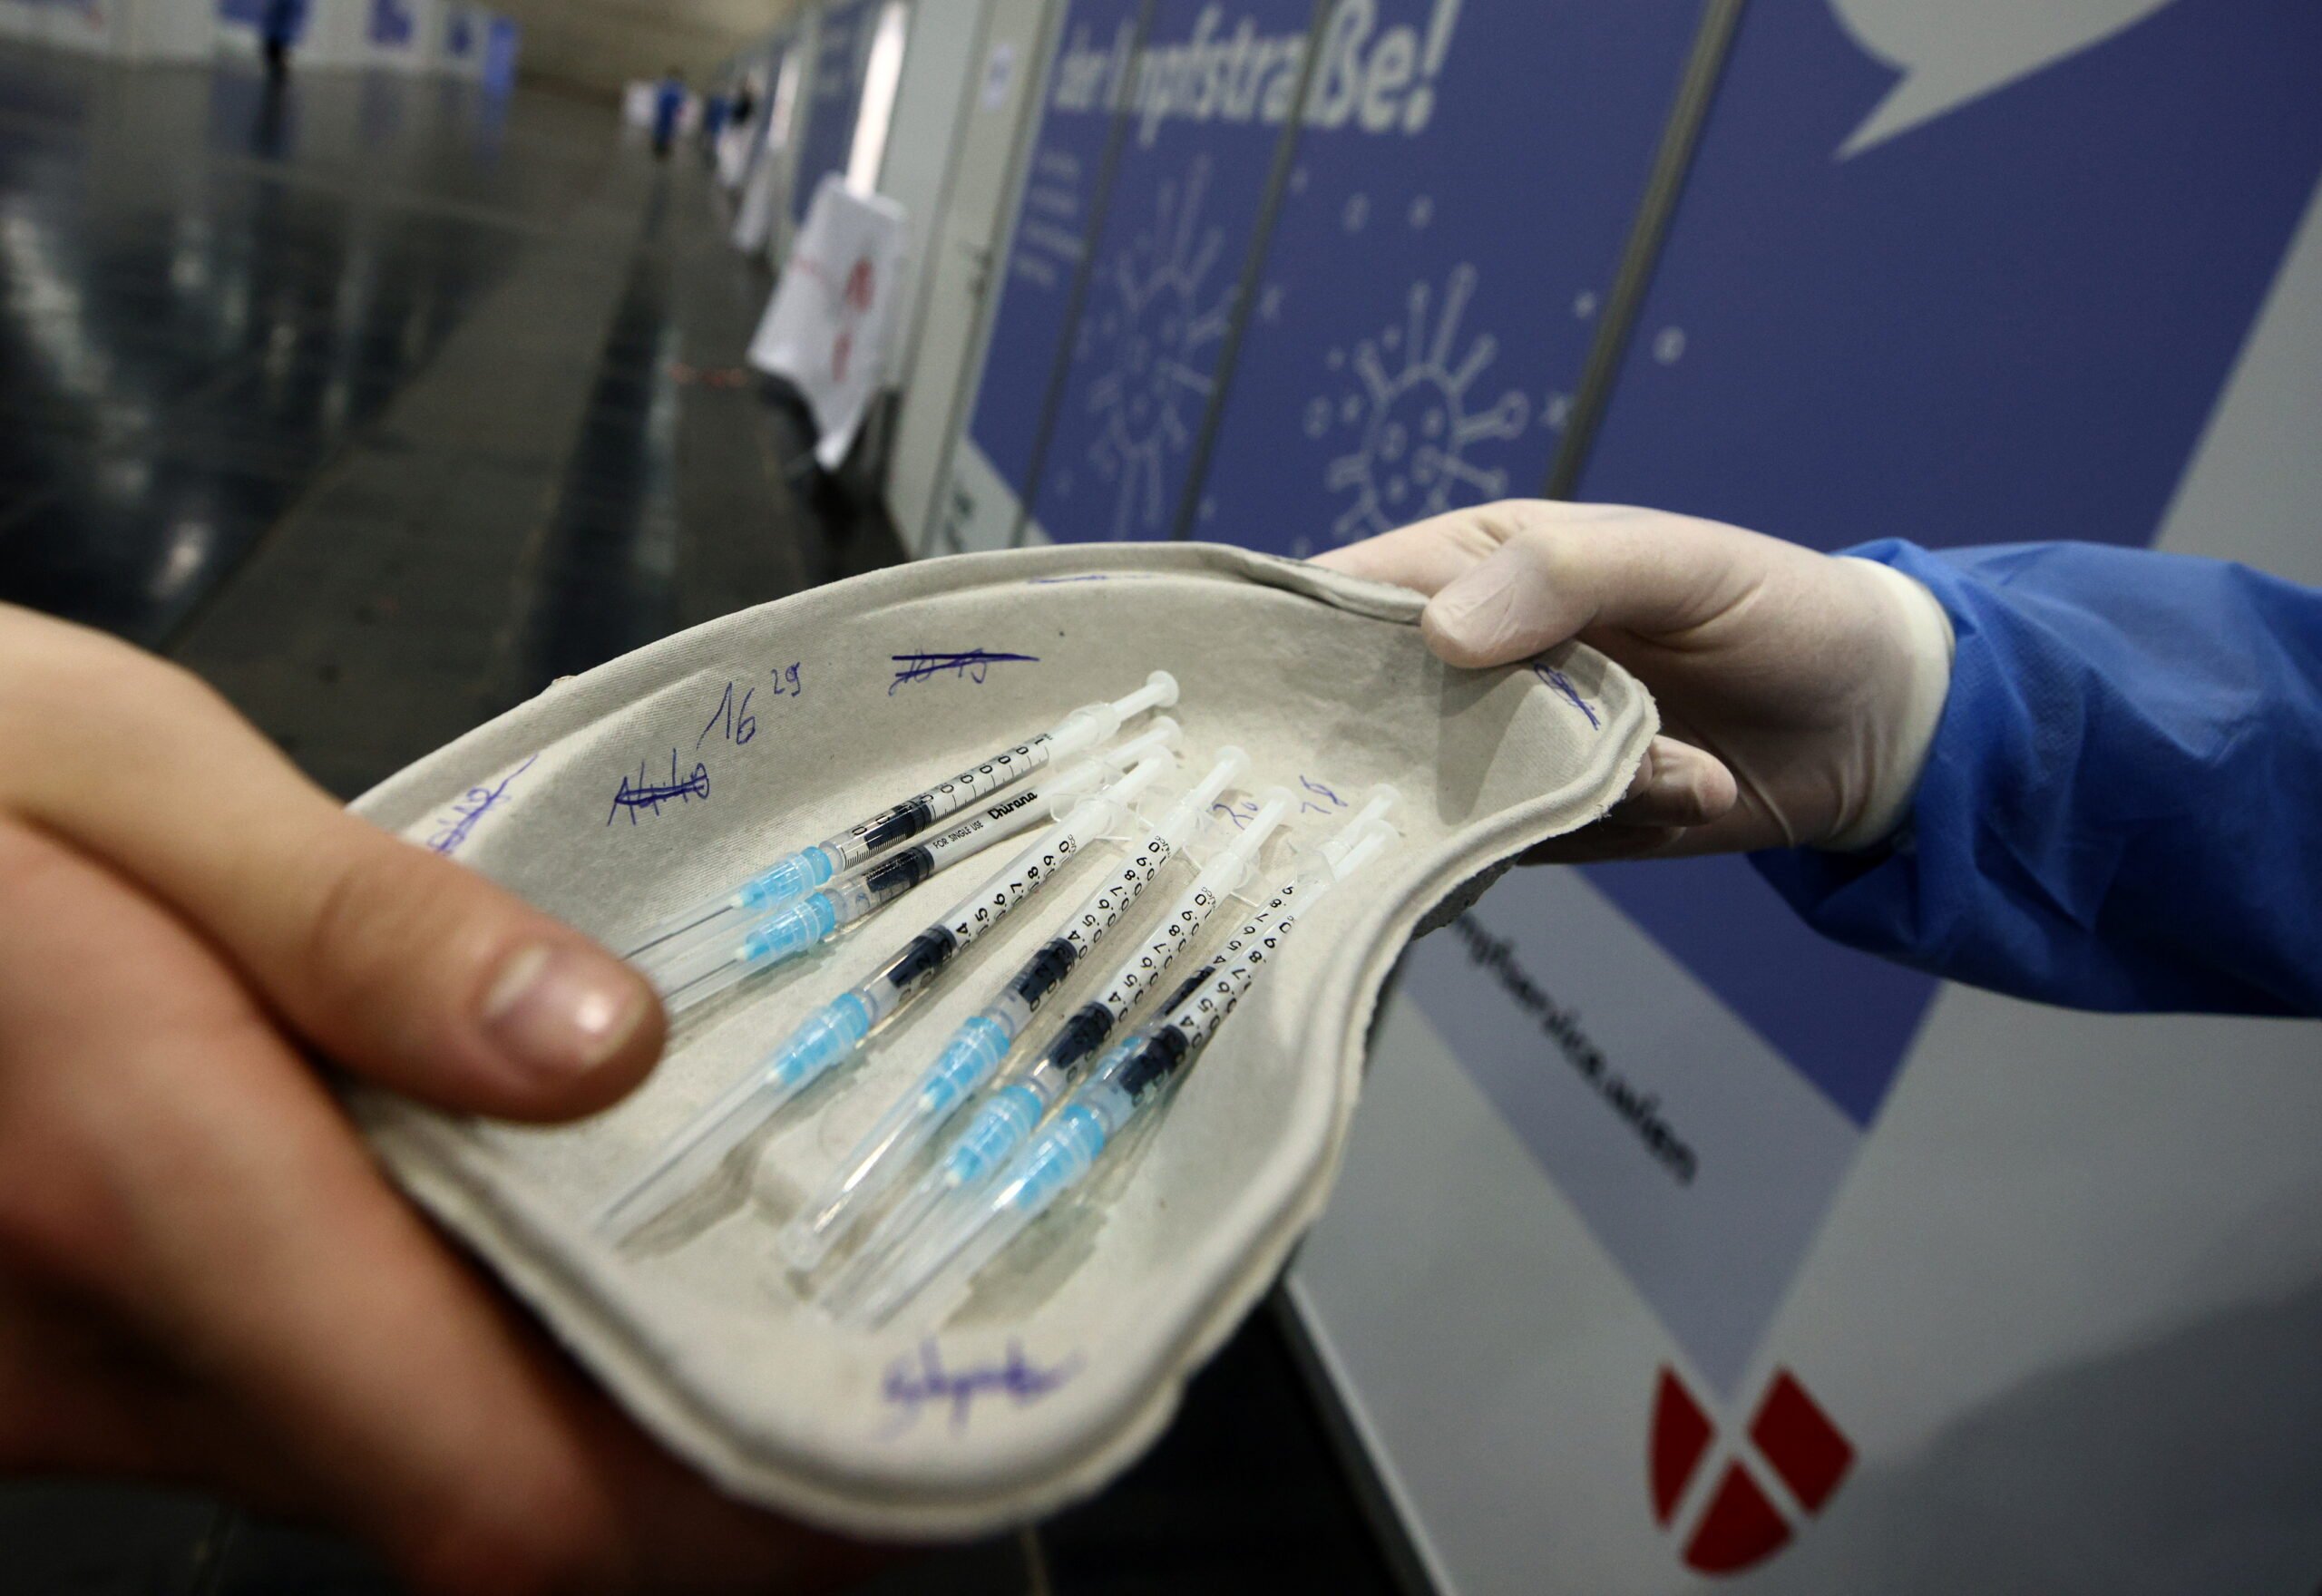 Η Αυστρία αναστέλλει την παρτίδα εμβολίων AstraZeneca COVID-19 μετά το θάνατο (Ενημέρωση)